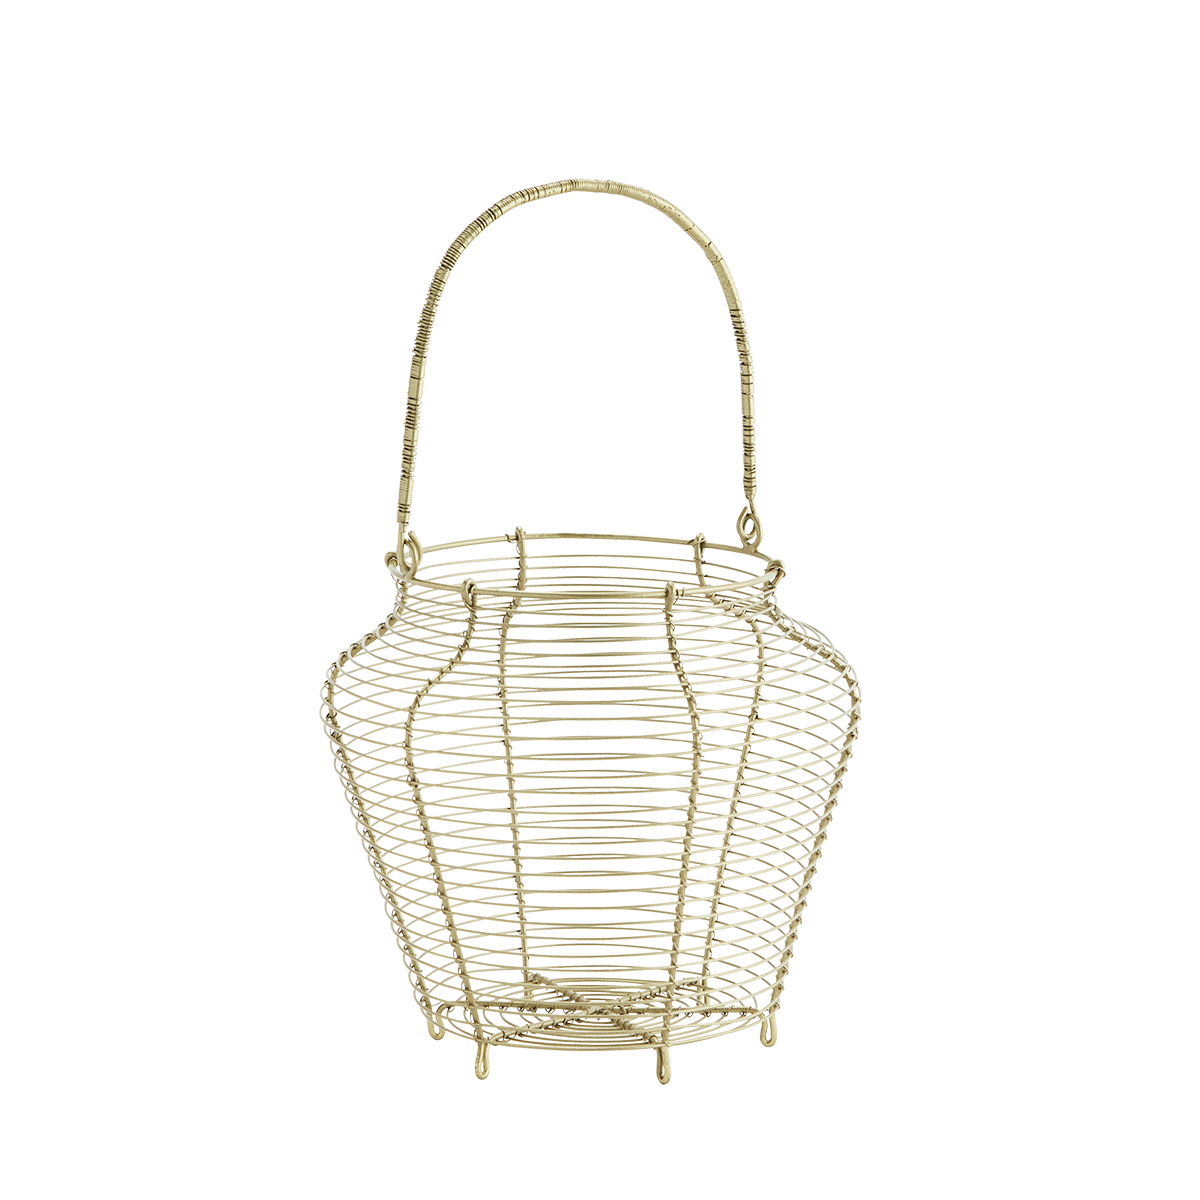 Iron basket w/ handle